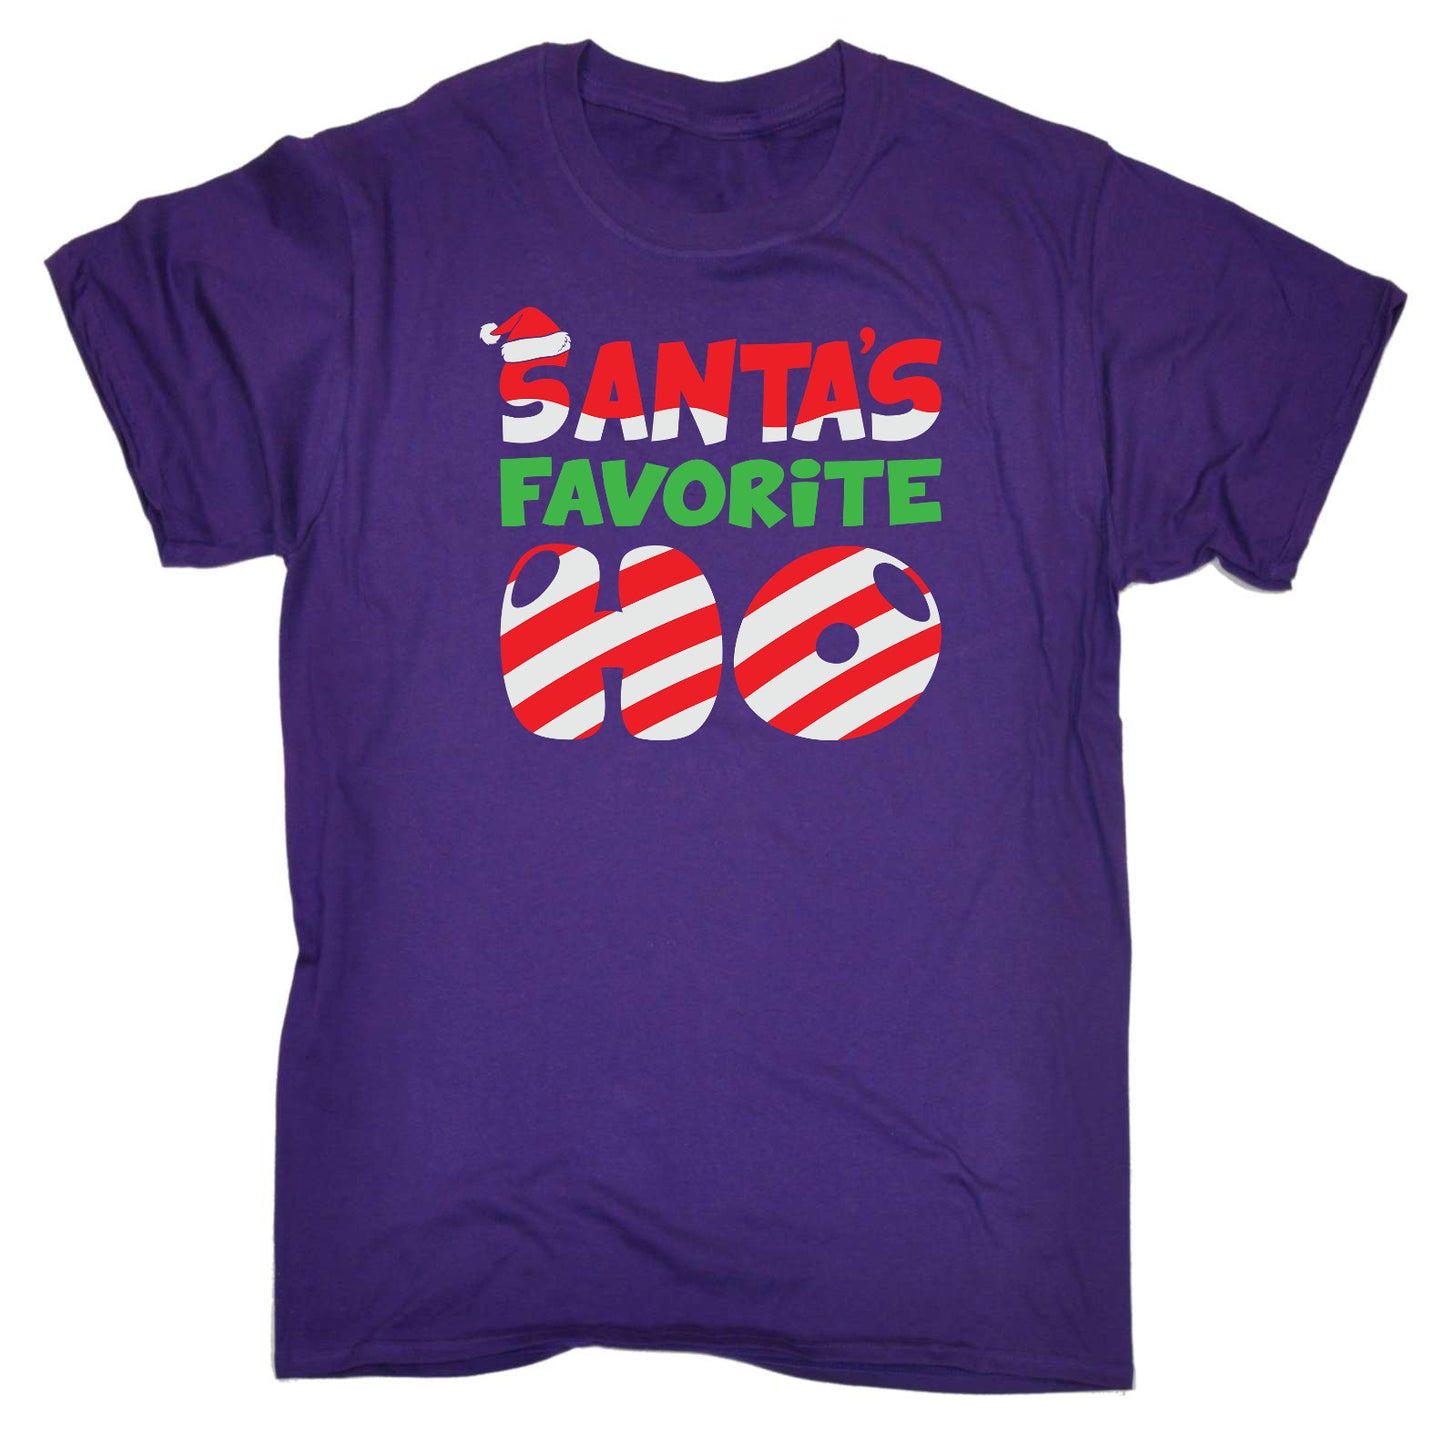 Santa Favorite Ho Christmas - Mens Funny T-Shirt Tshirts